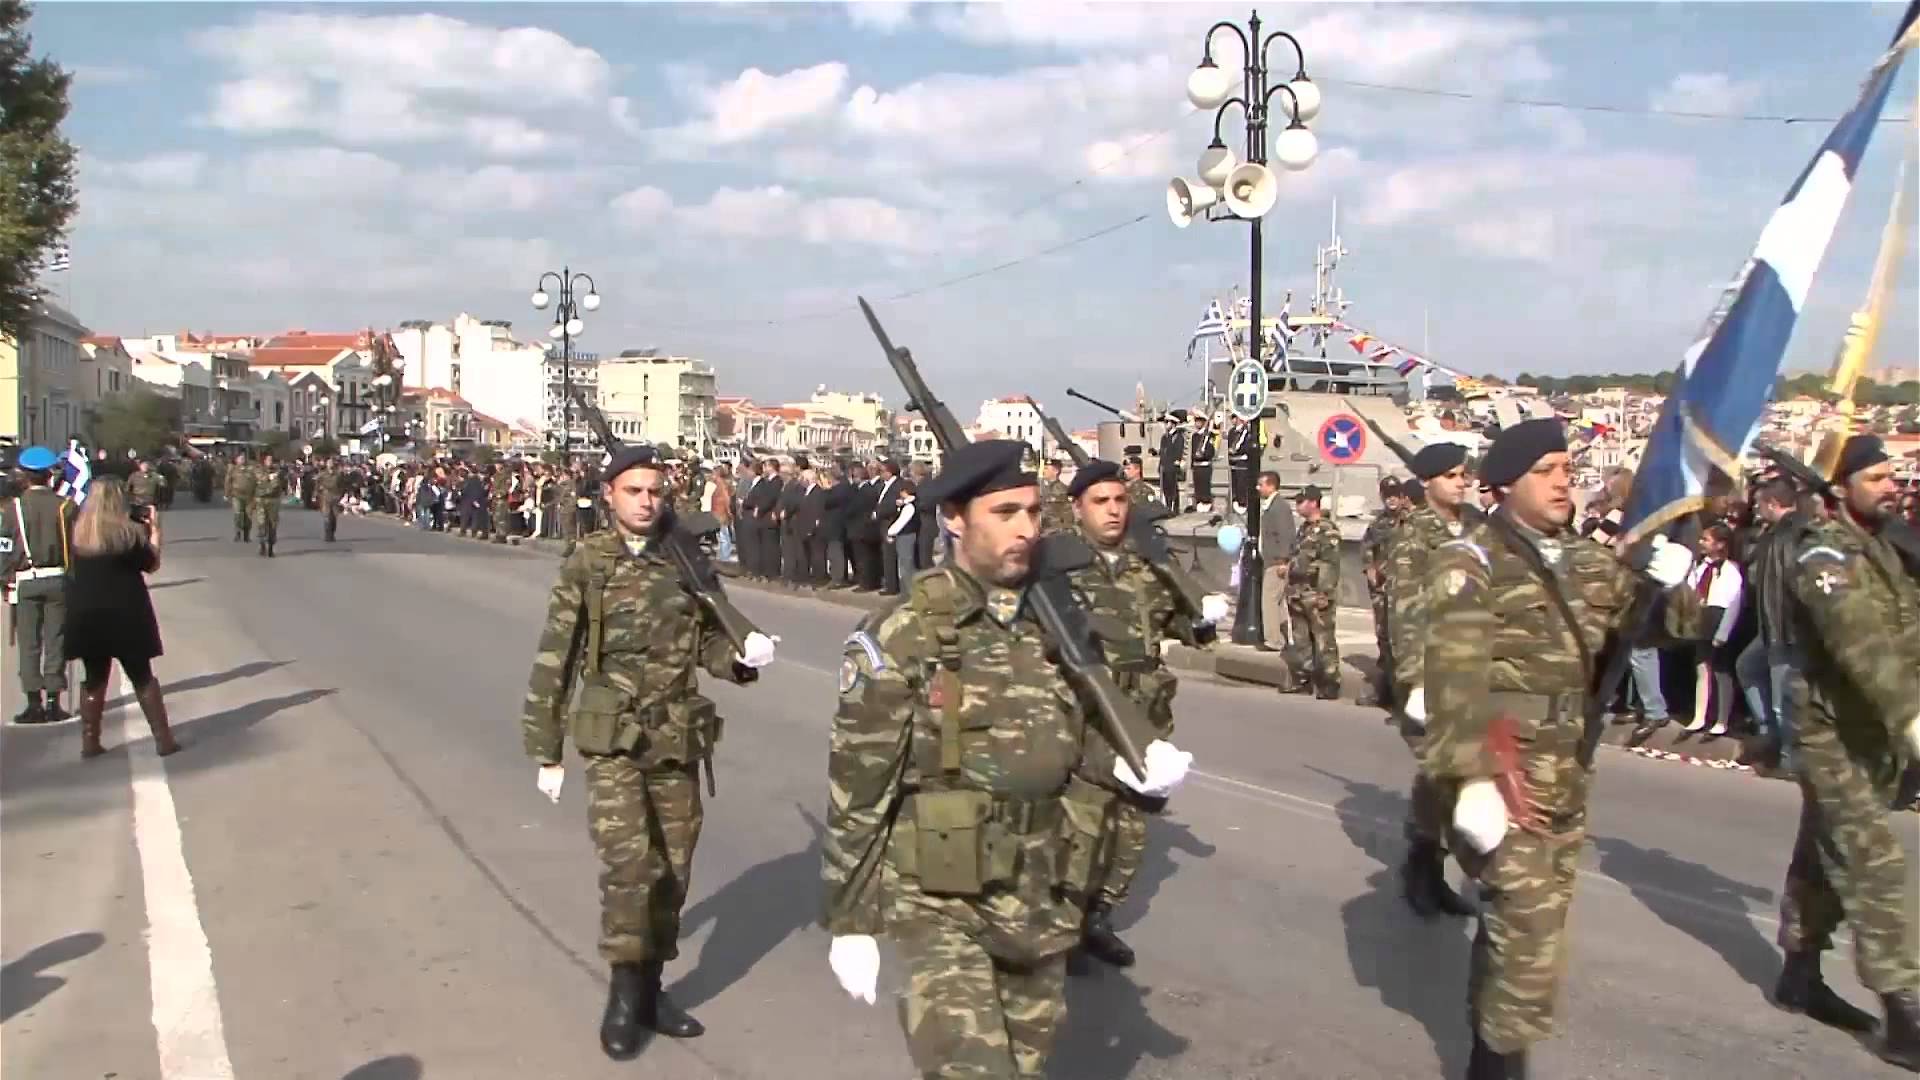 Χωρίς εκπροσώπους των Αρχών η παρέλαση για την απελευθέρωση της Λέσβου από τους Οθωμανούς